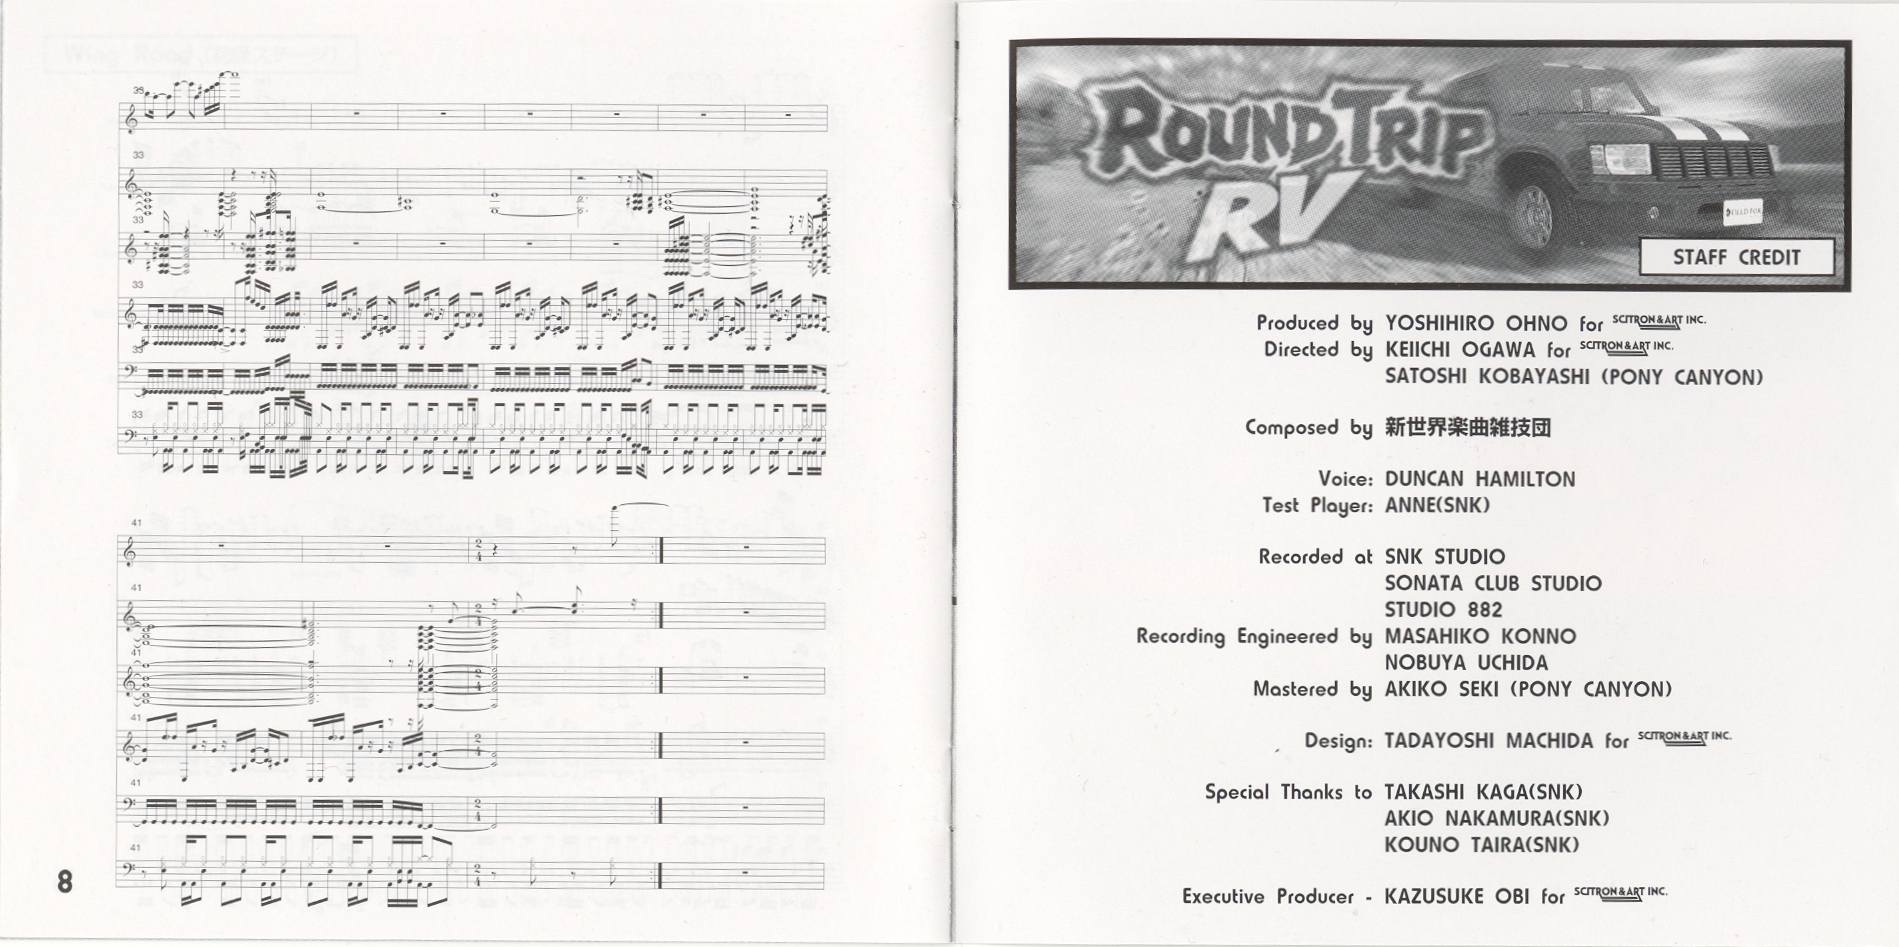 Round Trip RV (1997) MP3 - Download Round Trip RV (1997 